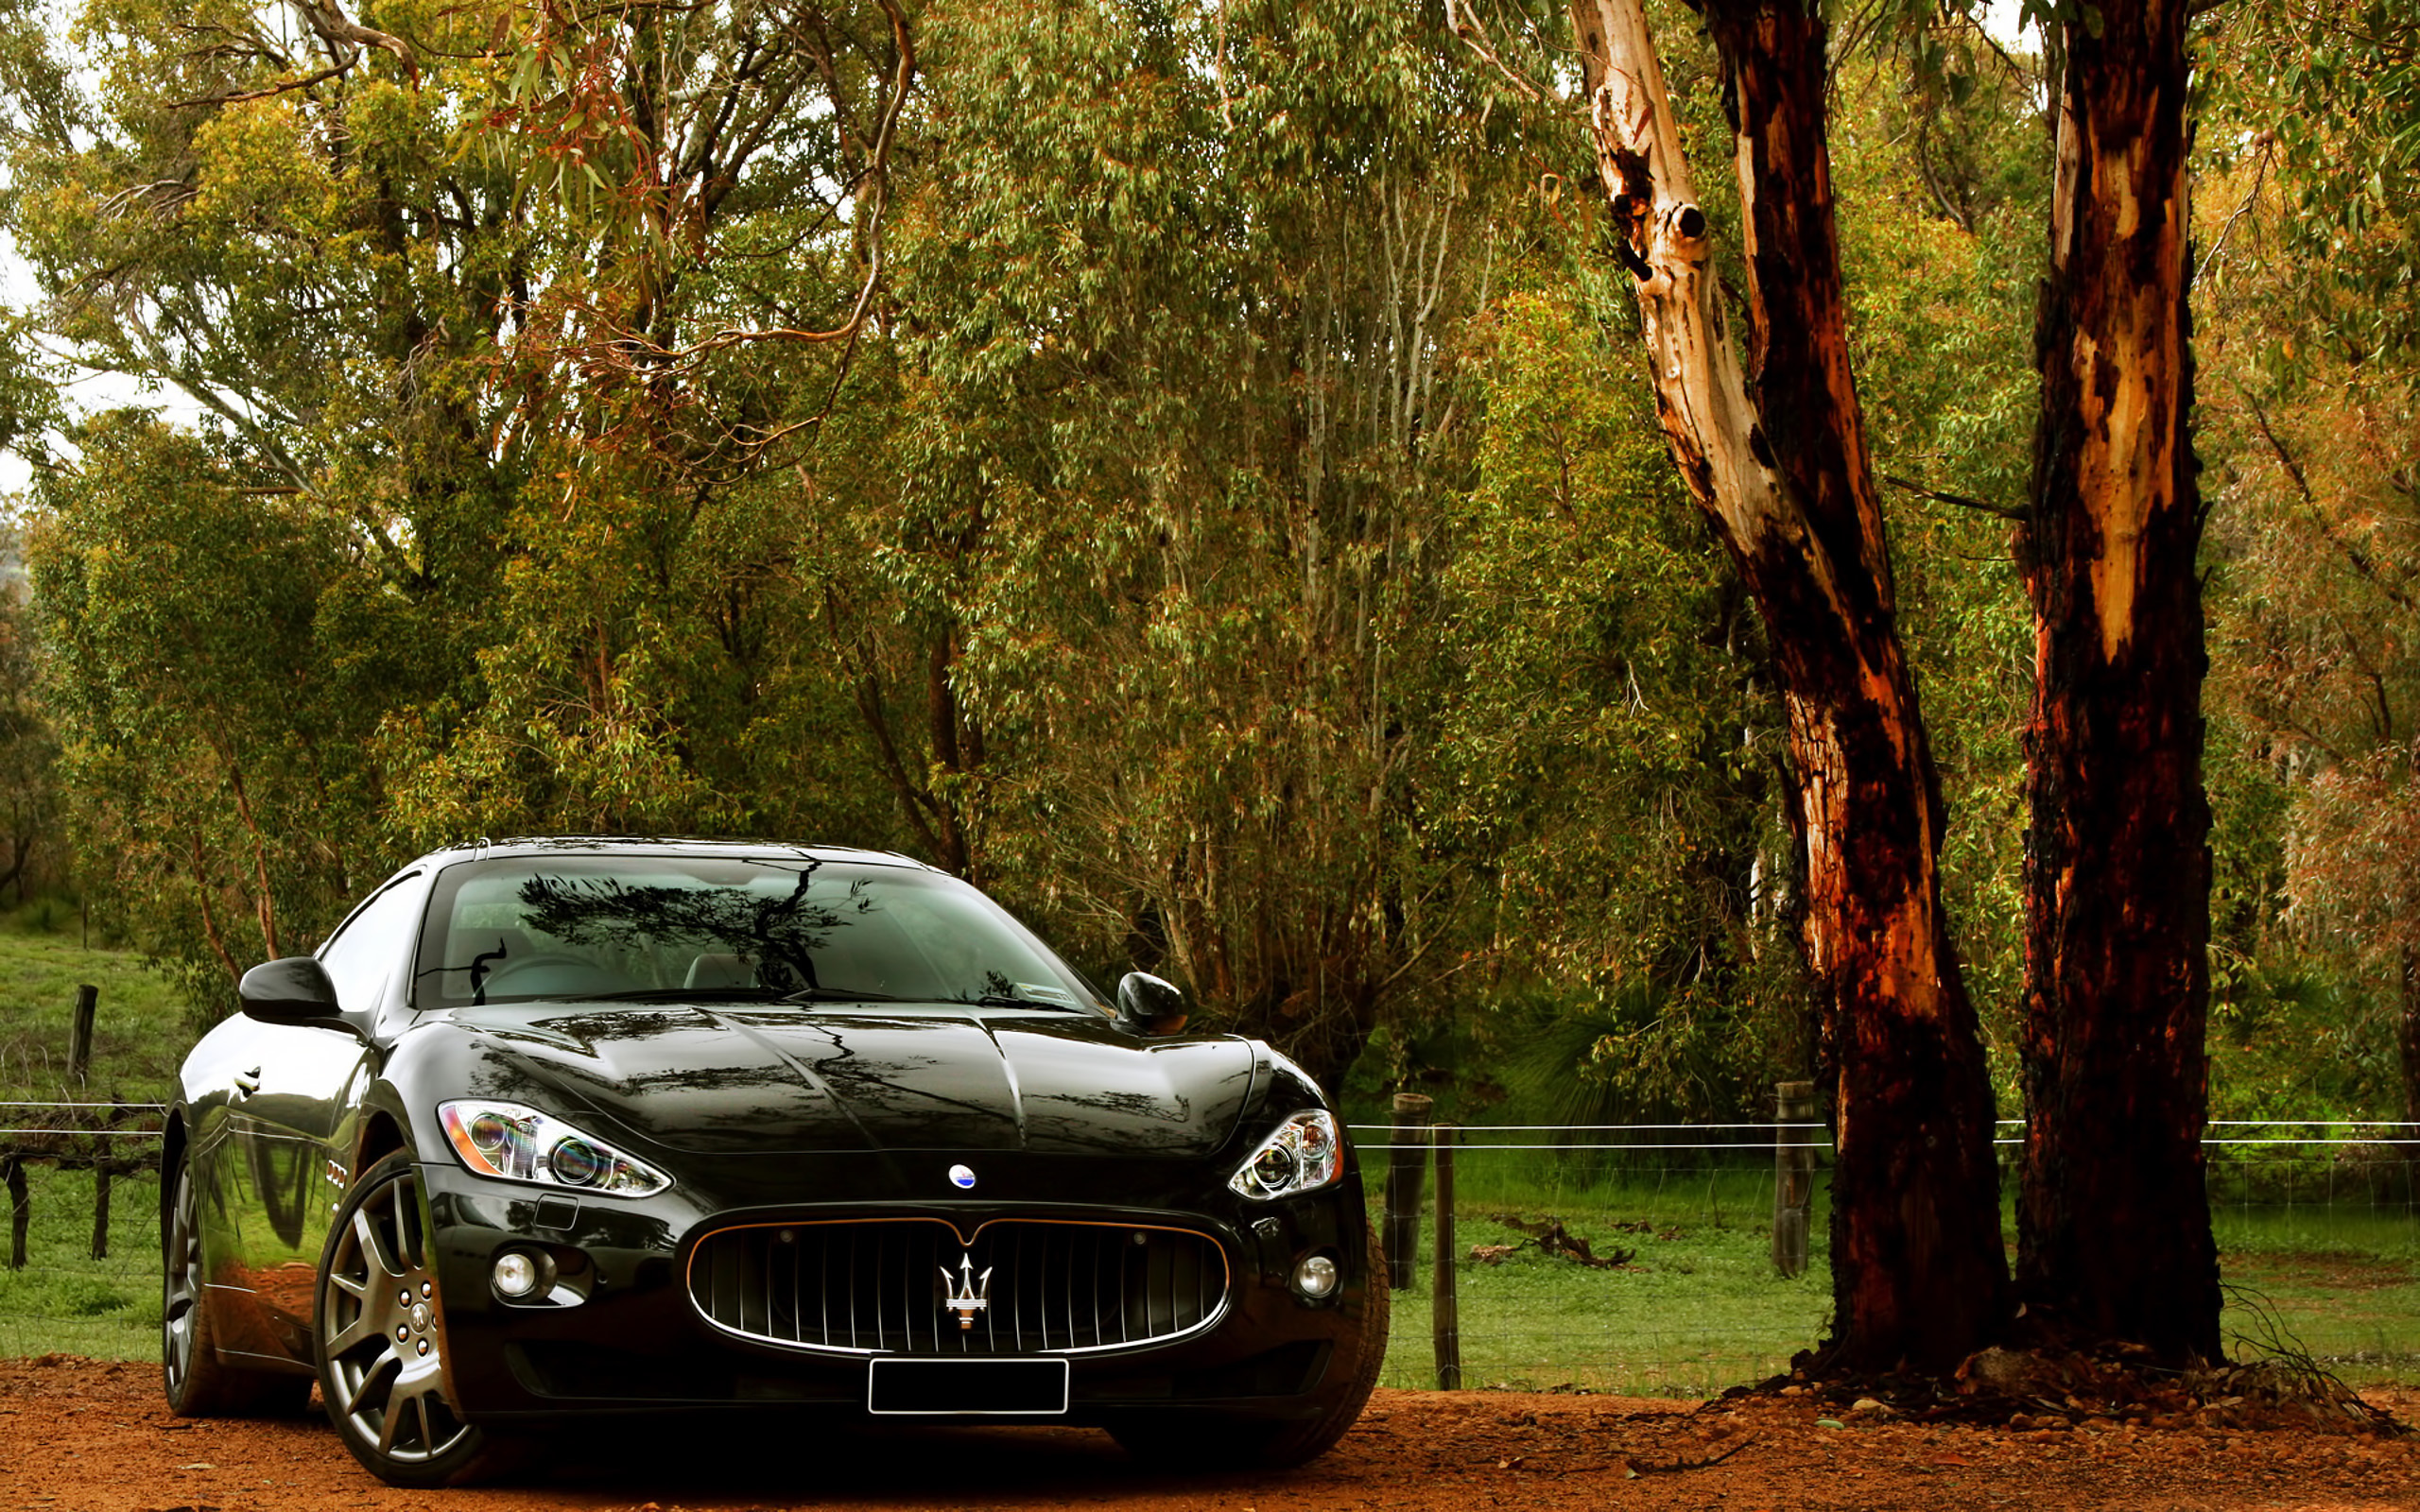 Скачать обои бесплатно Транспорт, Мазератти (Maserati), Машины картинка на рабочий стол ПК